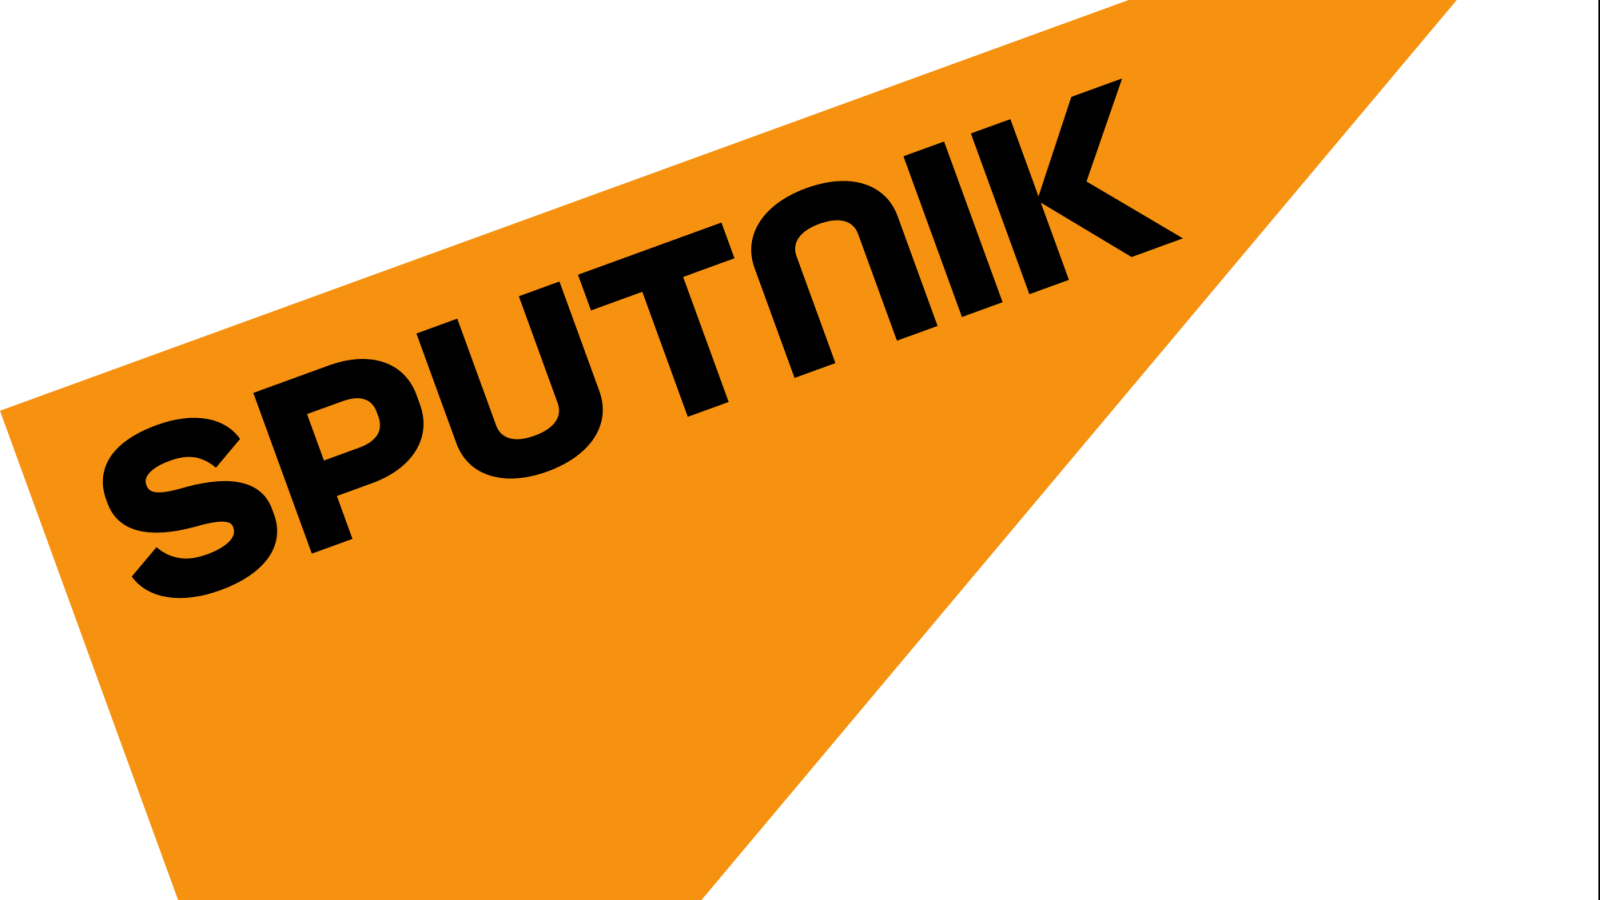 Two Former Sputnik Employees Have Turned Over Documents - Sputnik (1600x900)